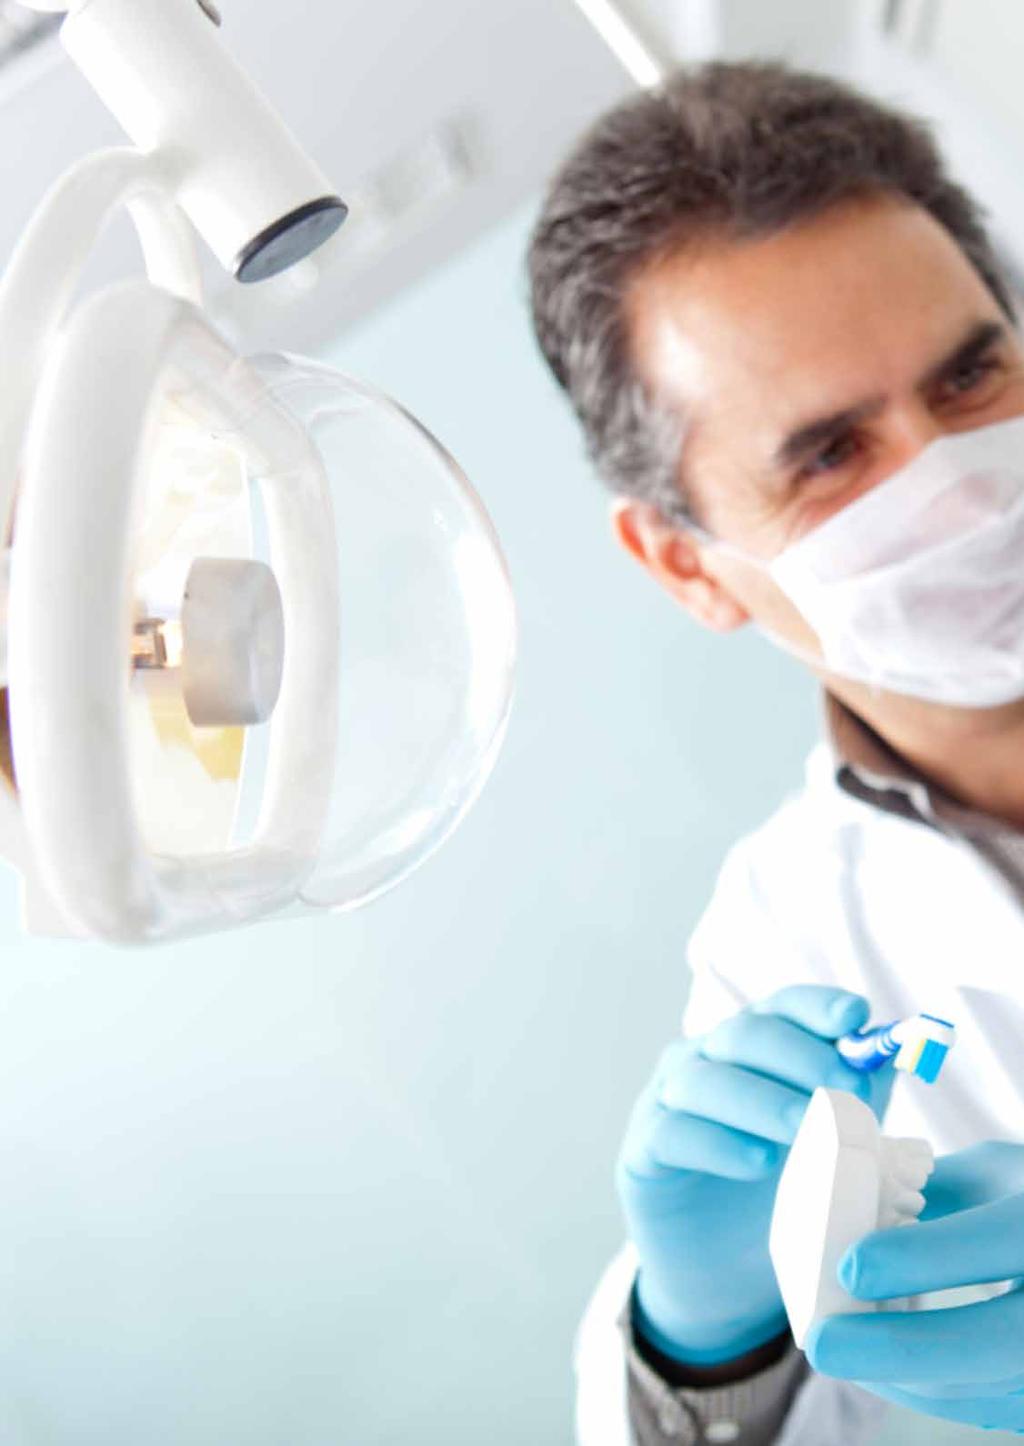 Stomatološki proizvodi - sve za stomatološke ordinacije, laboratorije i zubnu kozmetiku.